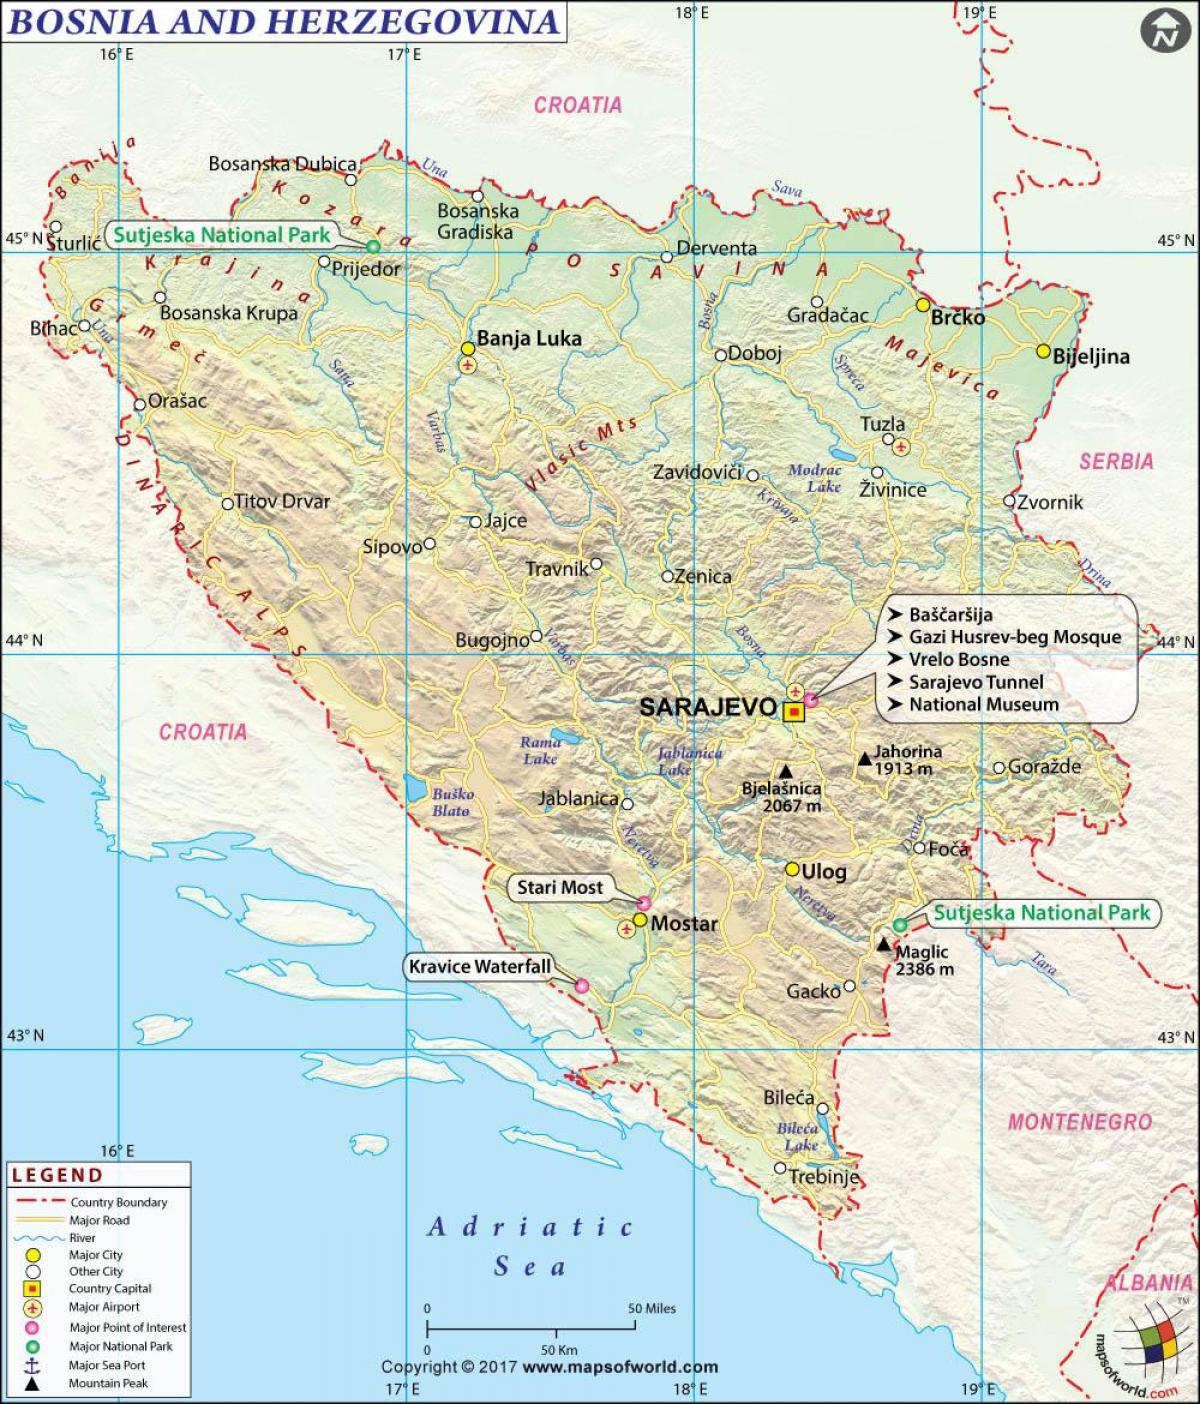 बोस्निया हर्जेगोविना के नक्शे